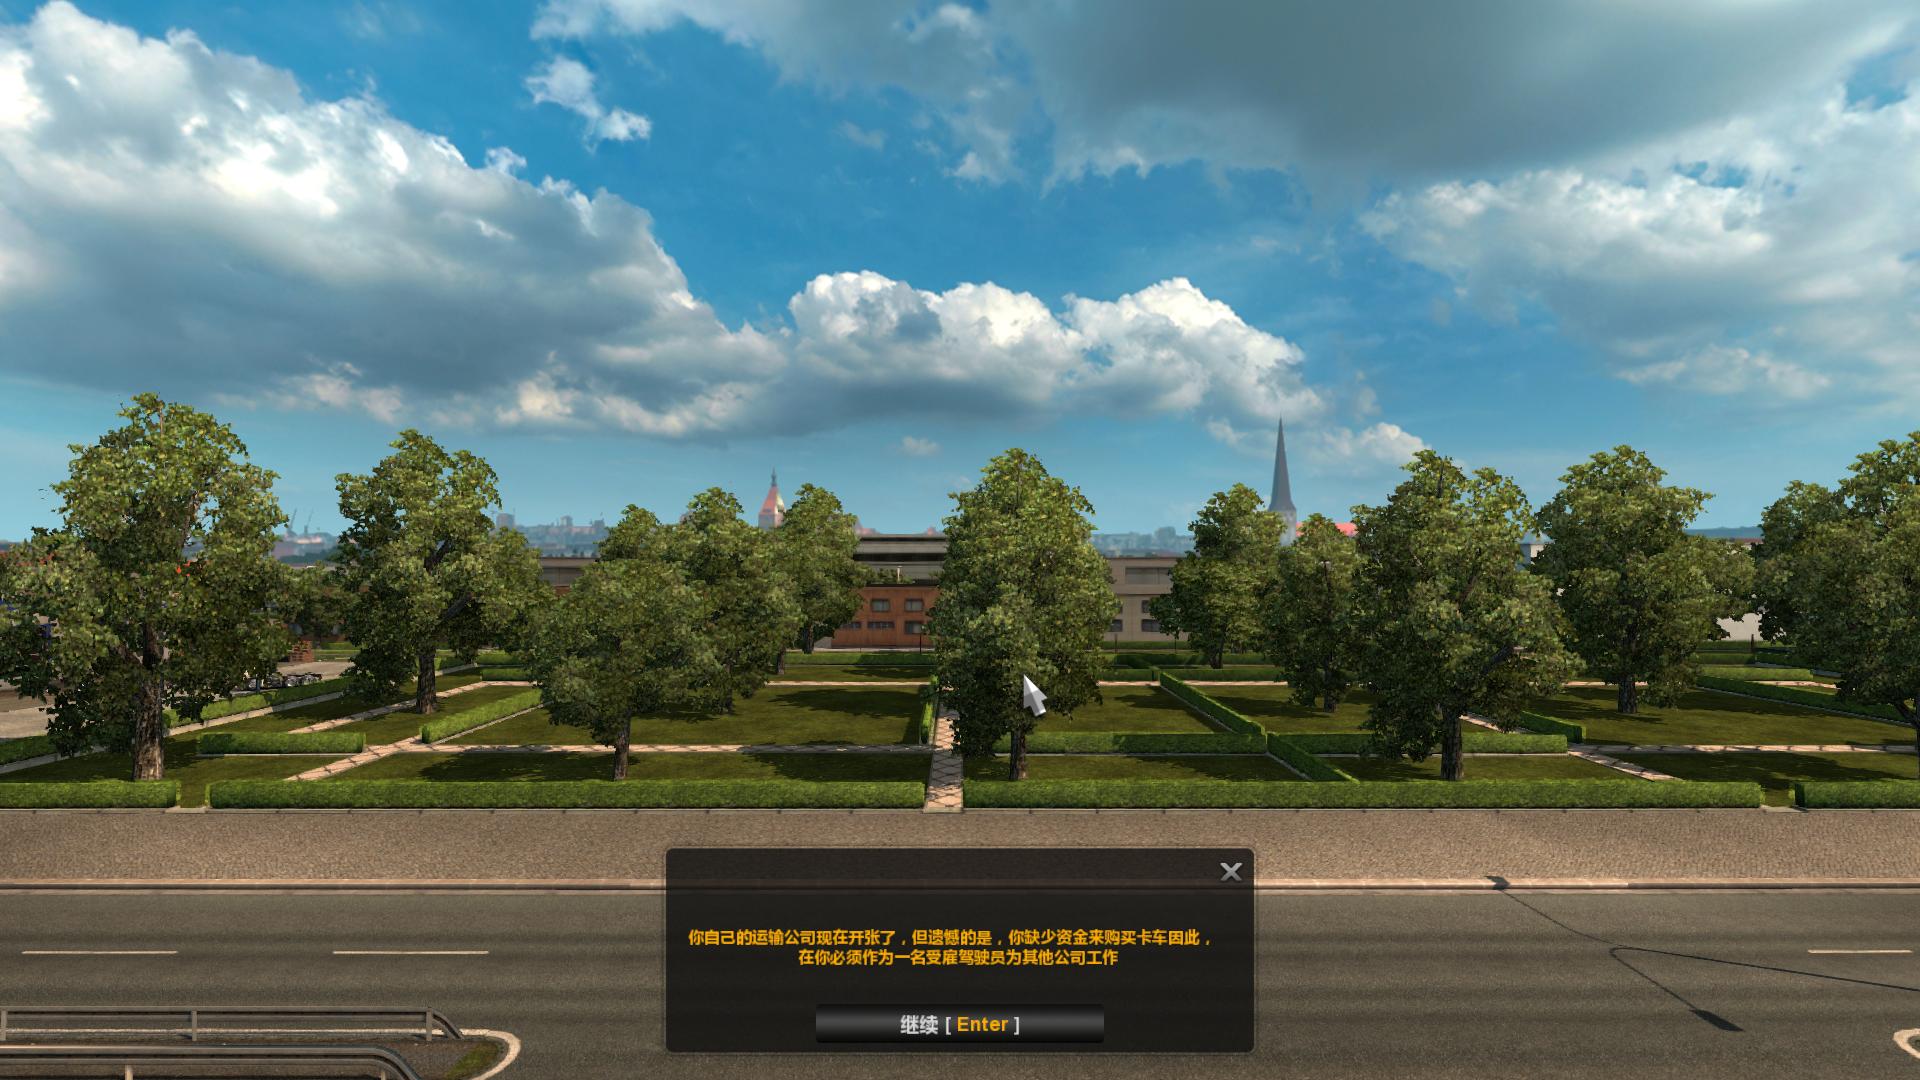 ŷ޿ģ2Euro Truck Simulator 2v1.28 6ɫĿ޺MOD